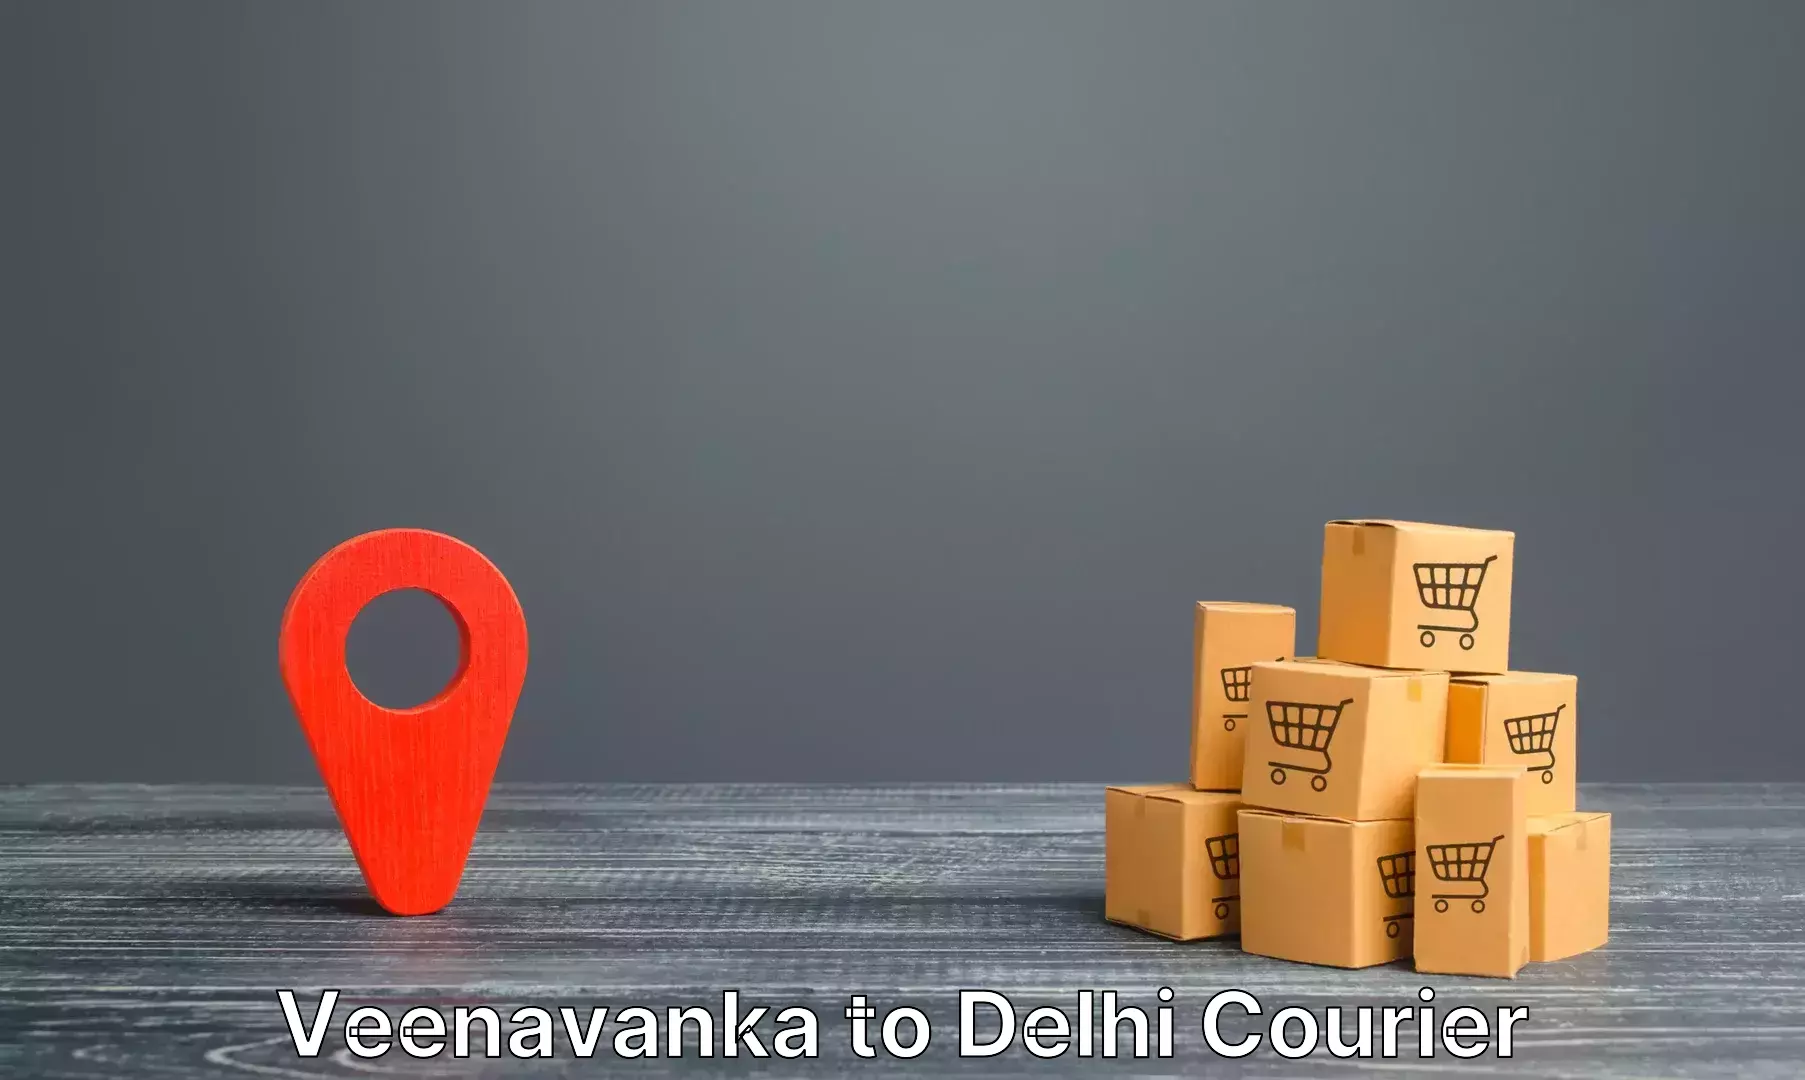 Baggage transport scheduler Veenavanka to Delhi